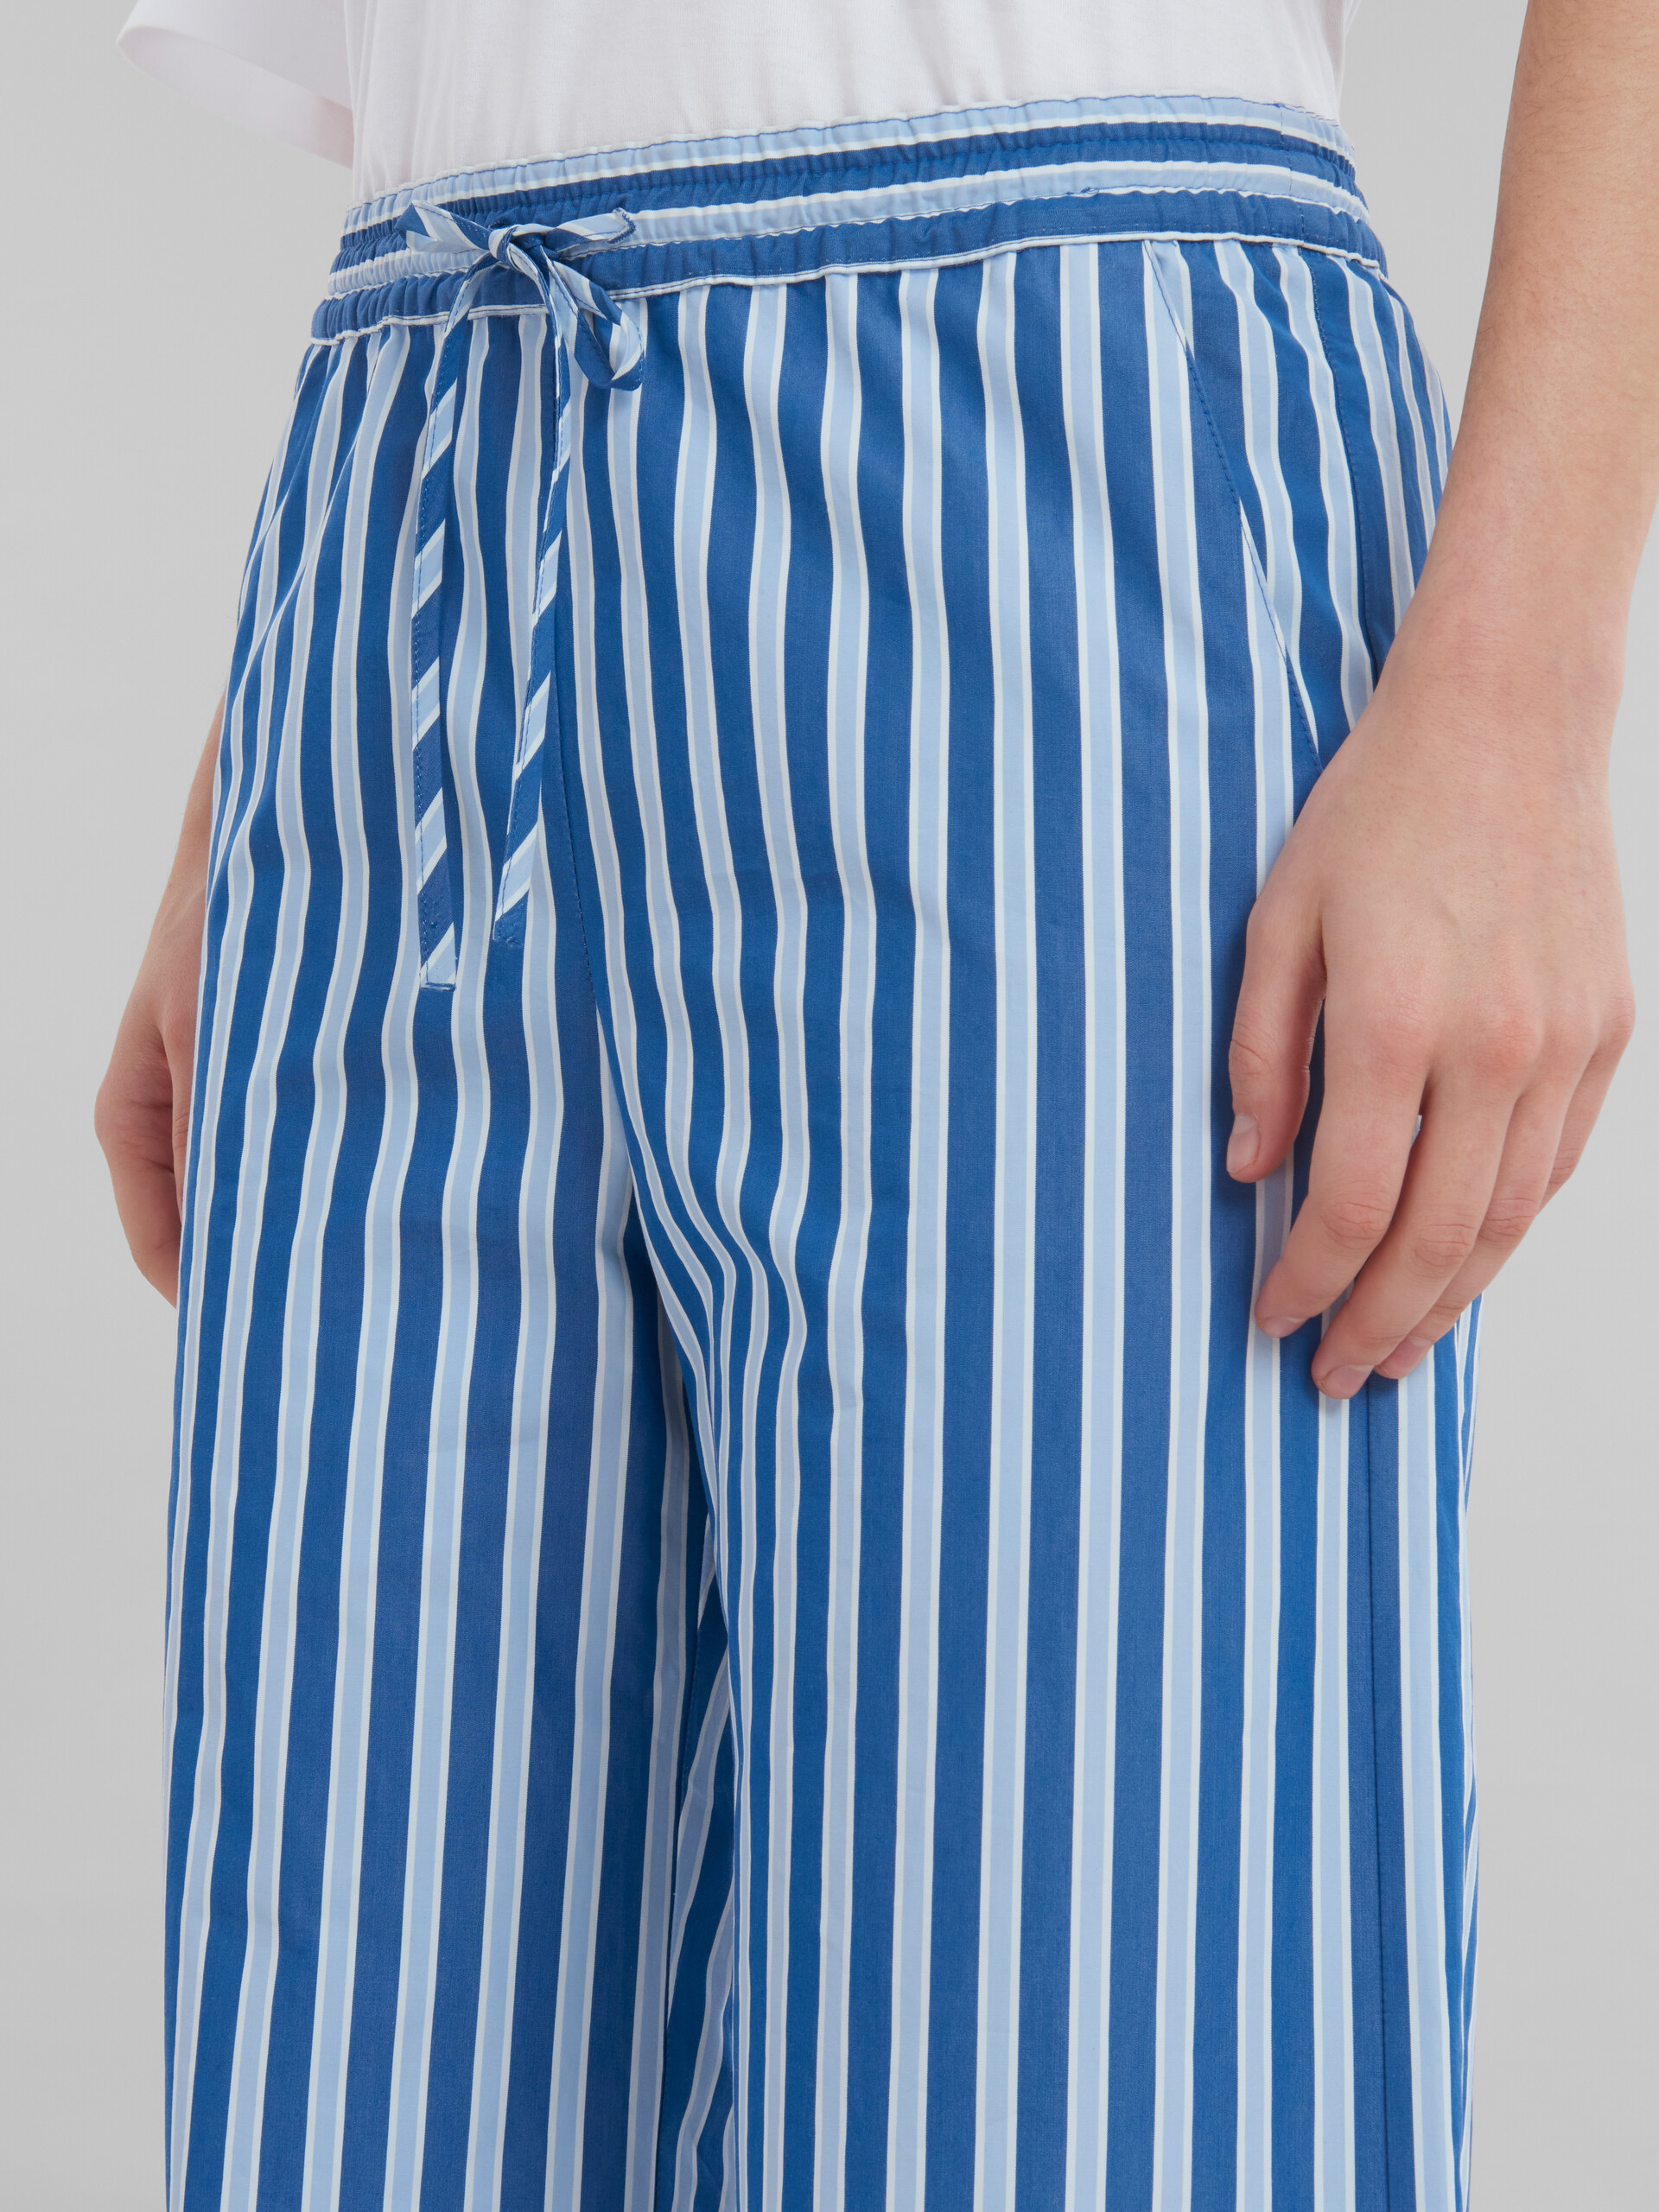 ブルー ホワイト ストライプ オーガニックポプリン製 パジャマパンツ - パンツ - Image 4